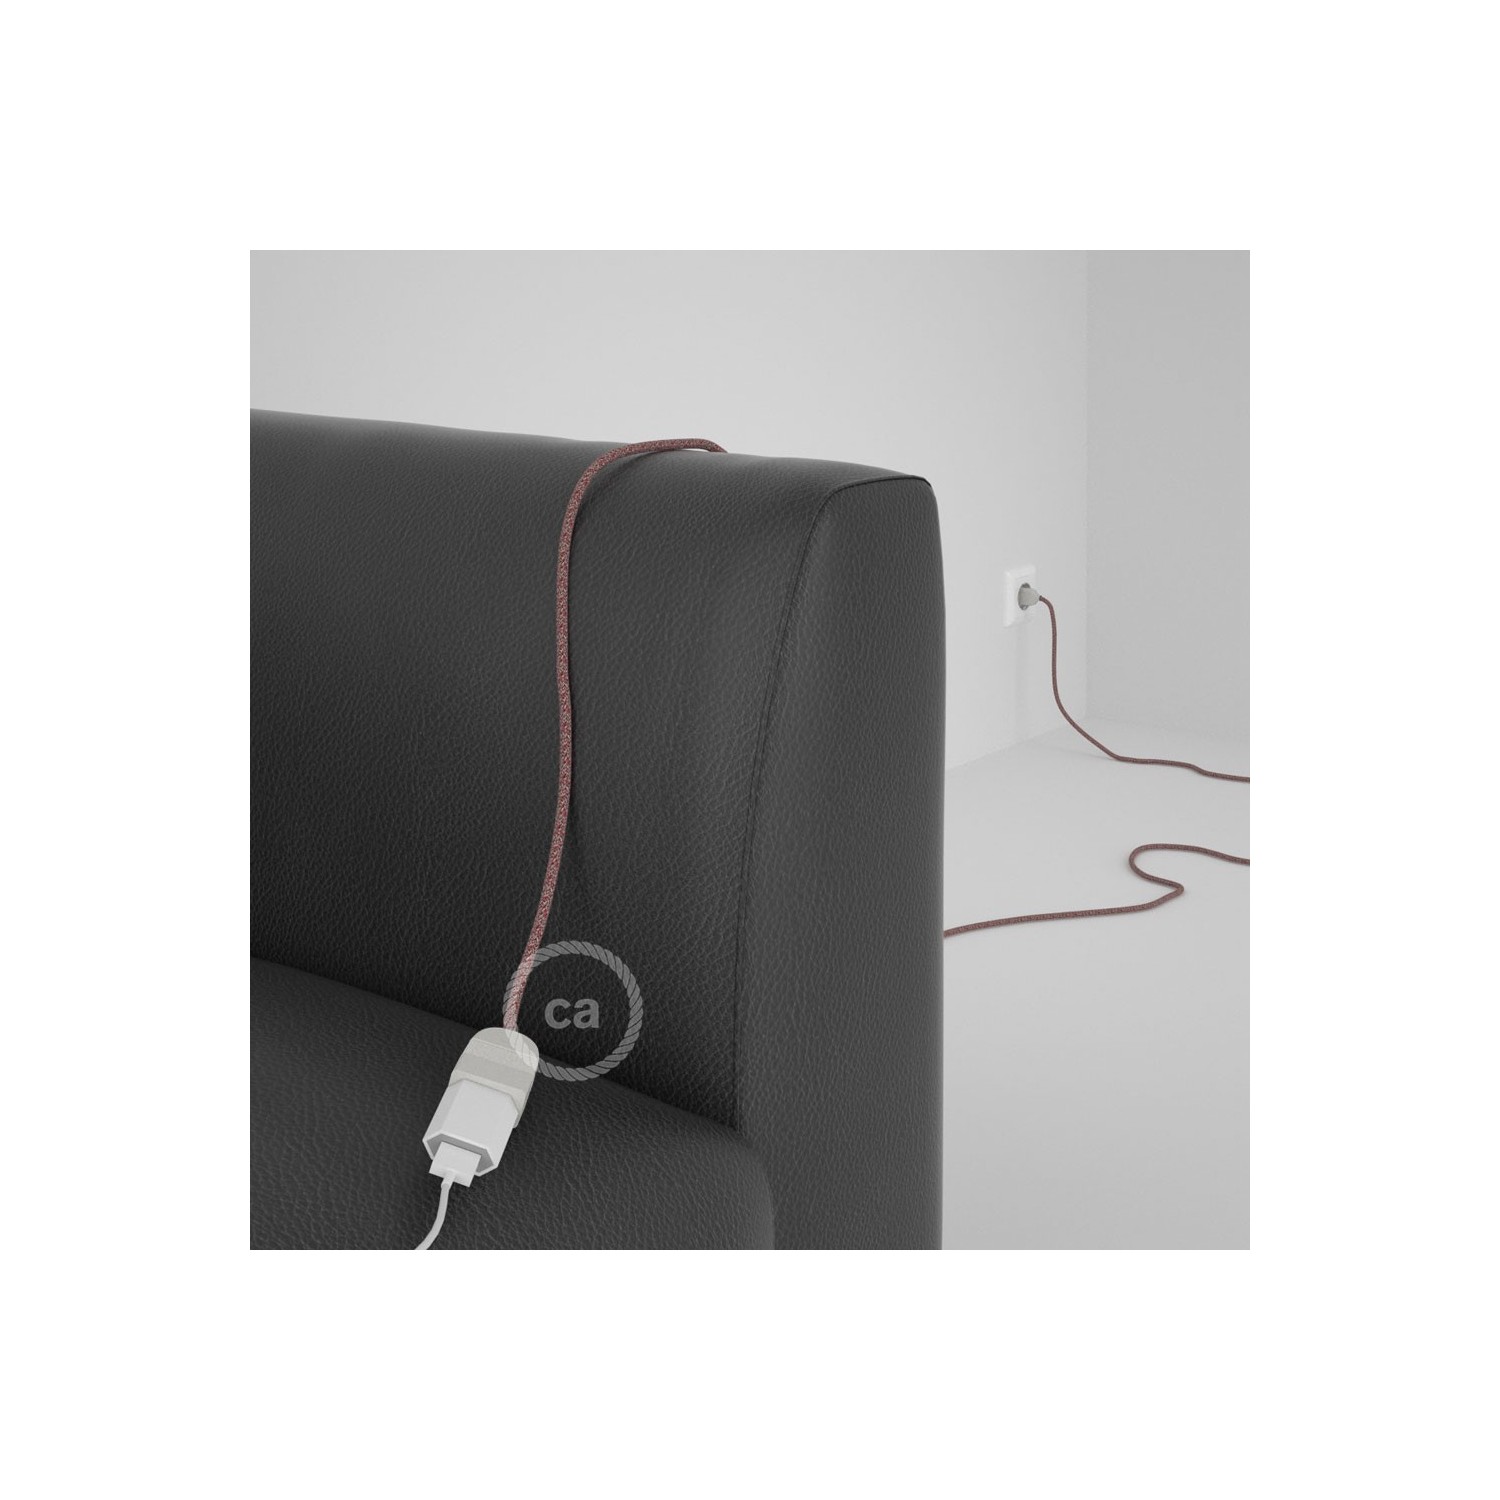 Rallonge électrique avec câble textile RS83 Coton et Lin Naturel Rouge 2P 10A Made in Italy.